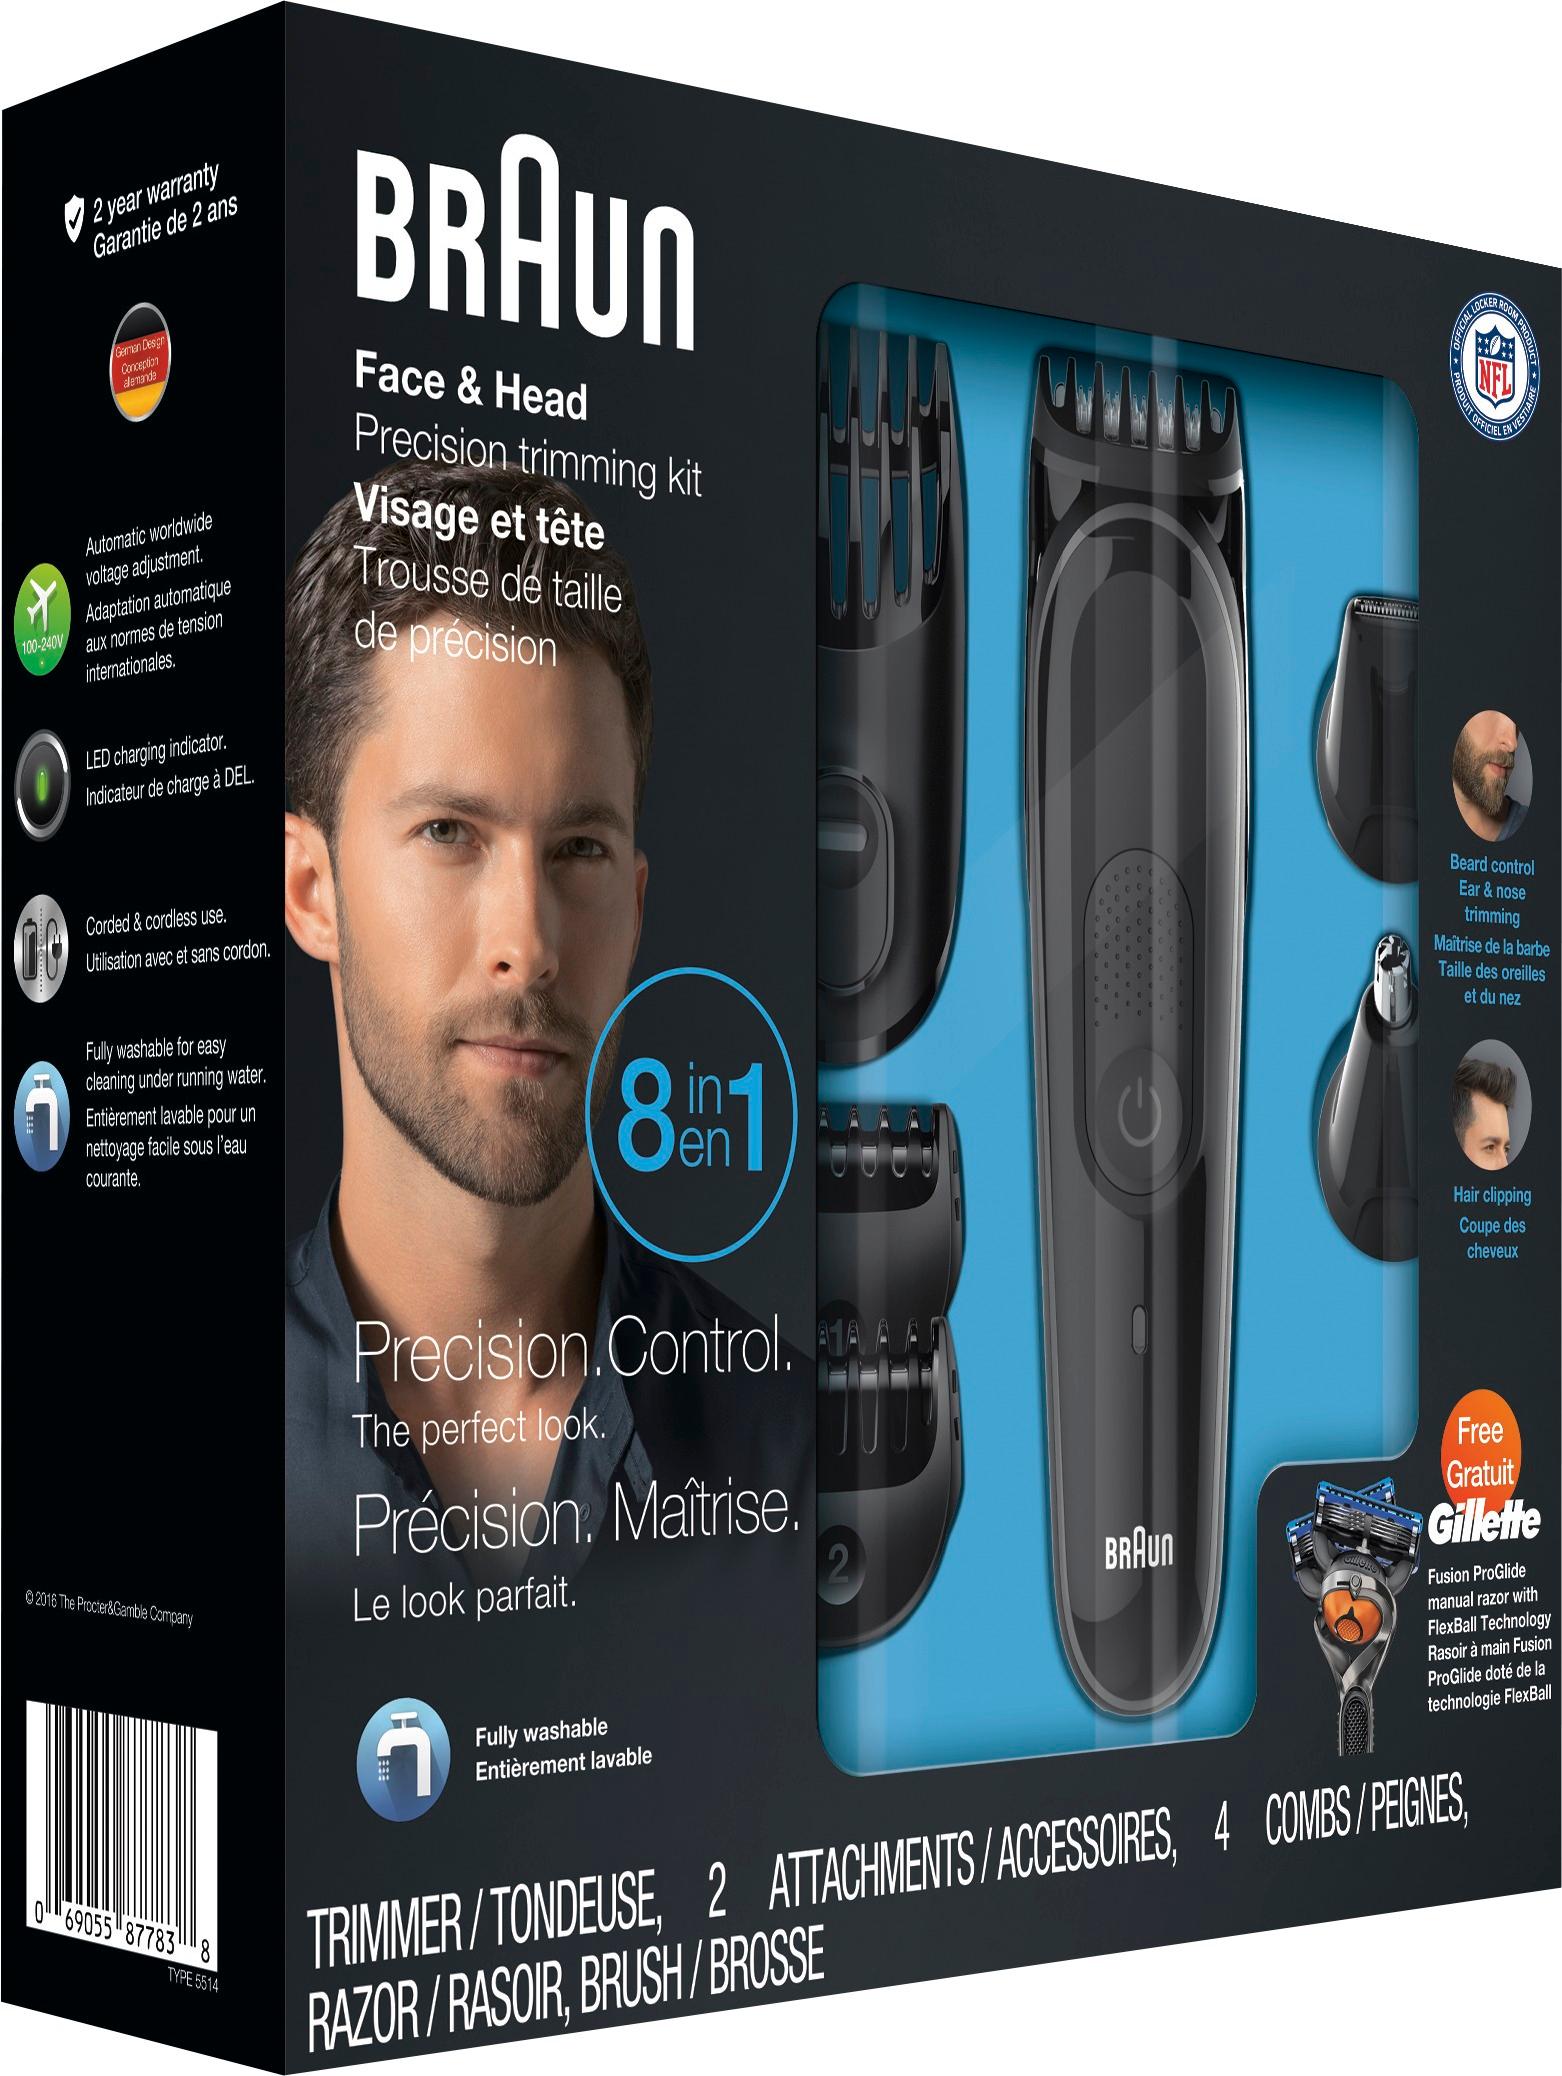 braun multi grooming kit in black